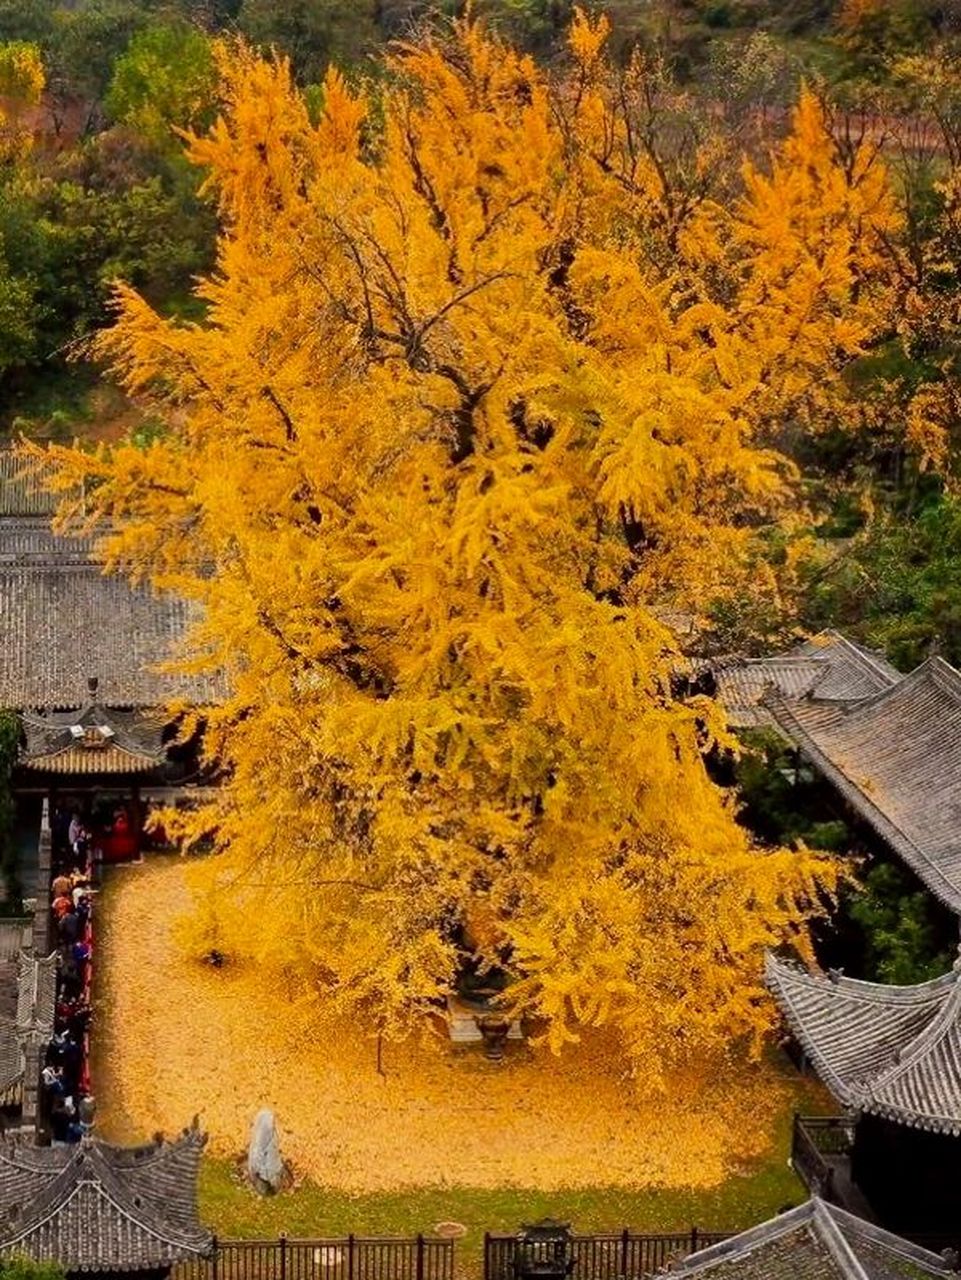 中国最大银杏树排名图片